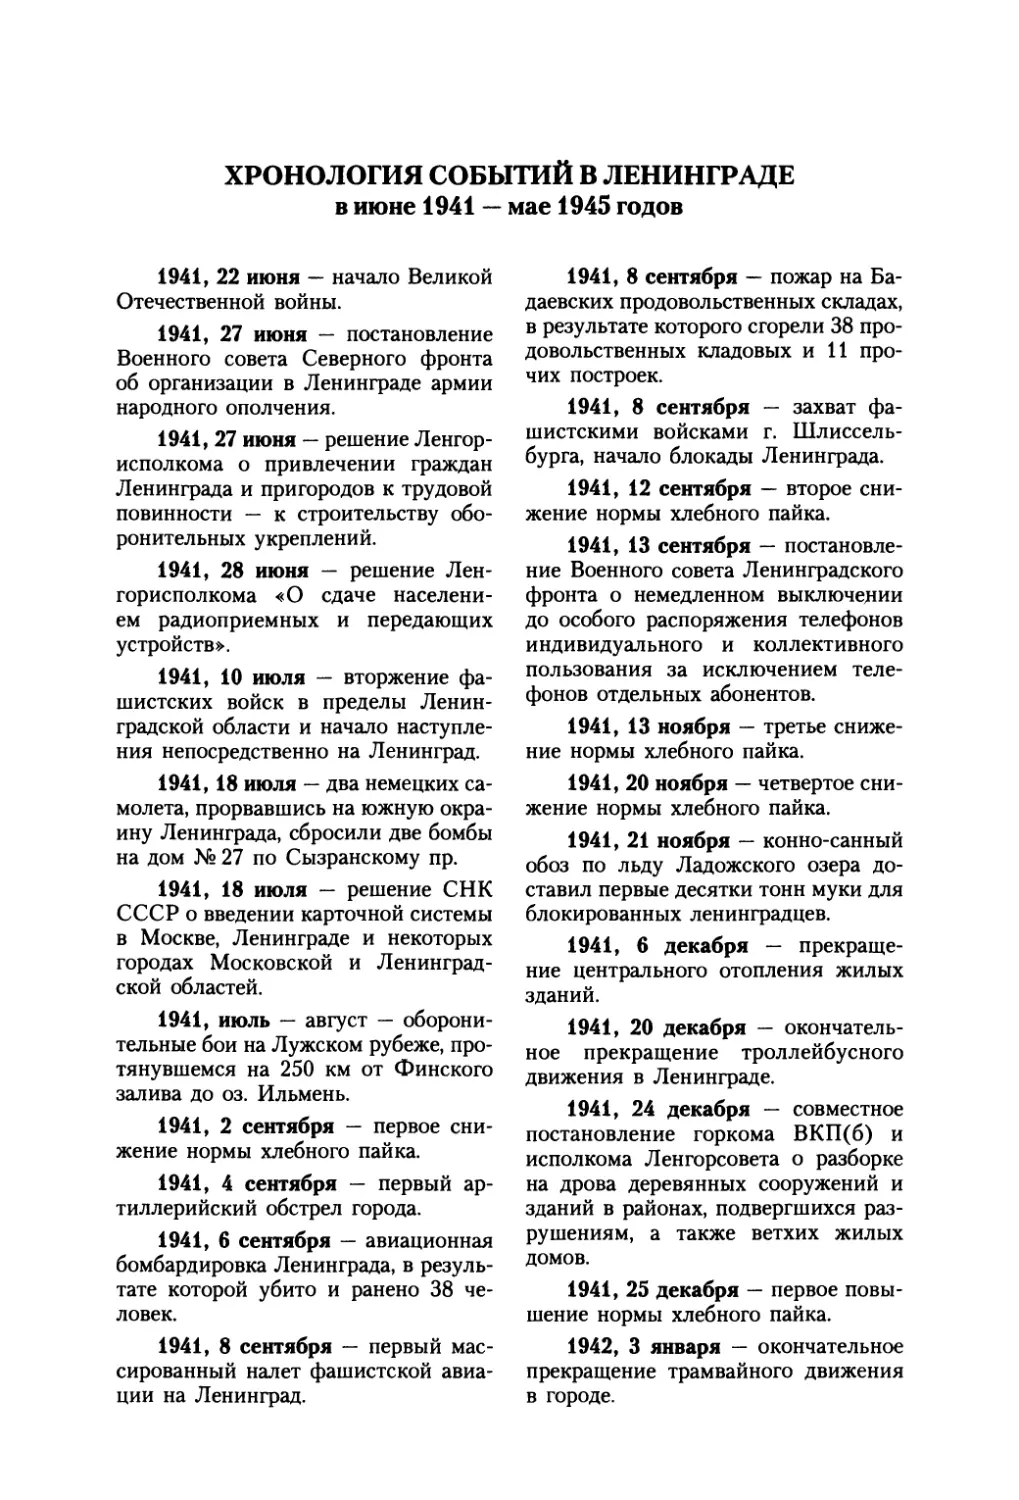 Хронология событий в Ленинграде 1941-1945 гг